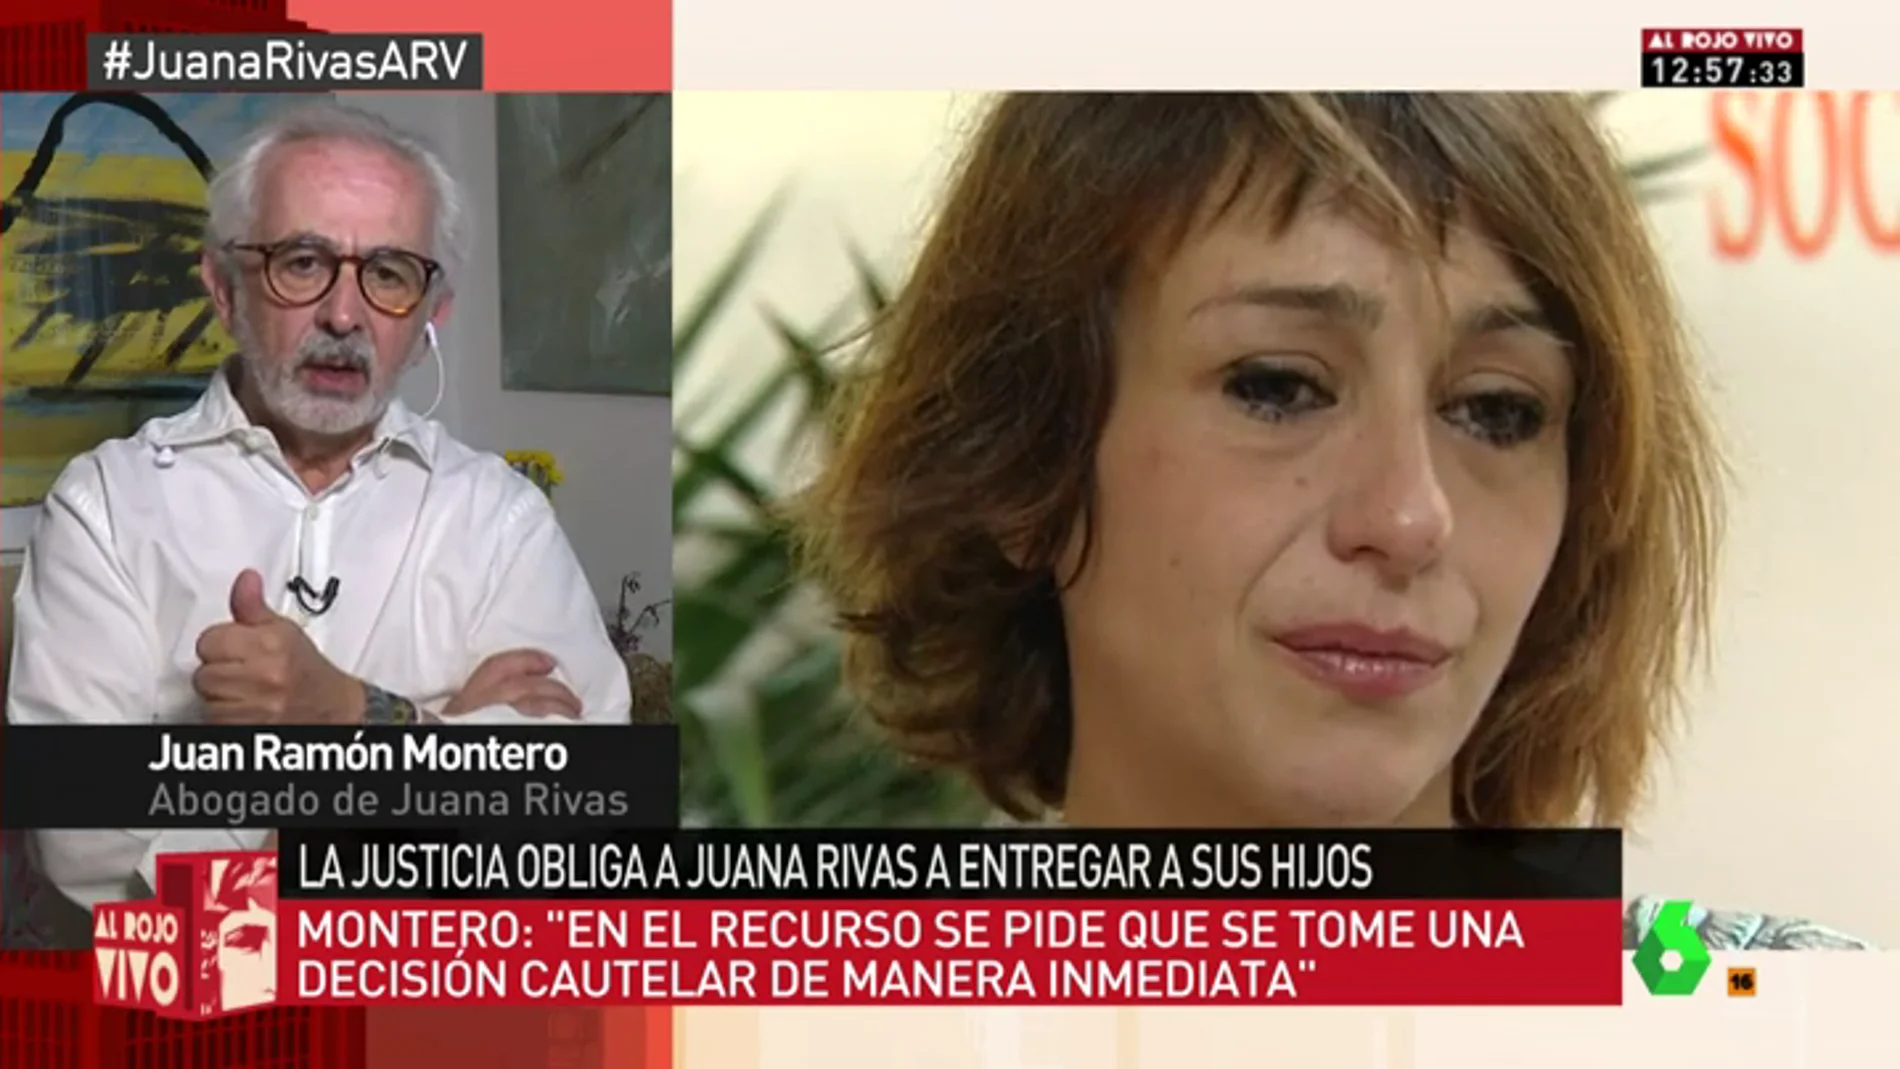 Juan Ramón Montero, abogado de Juana Rivas: “Pedimos que se tomen medidas cautelares favorables para los menores”